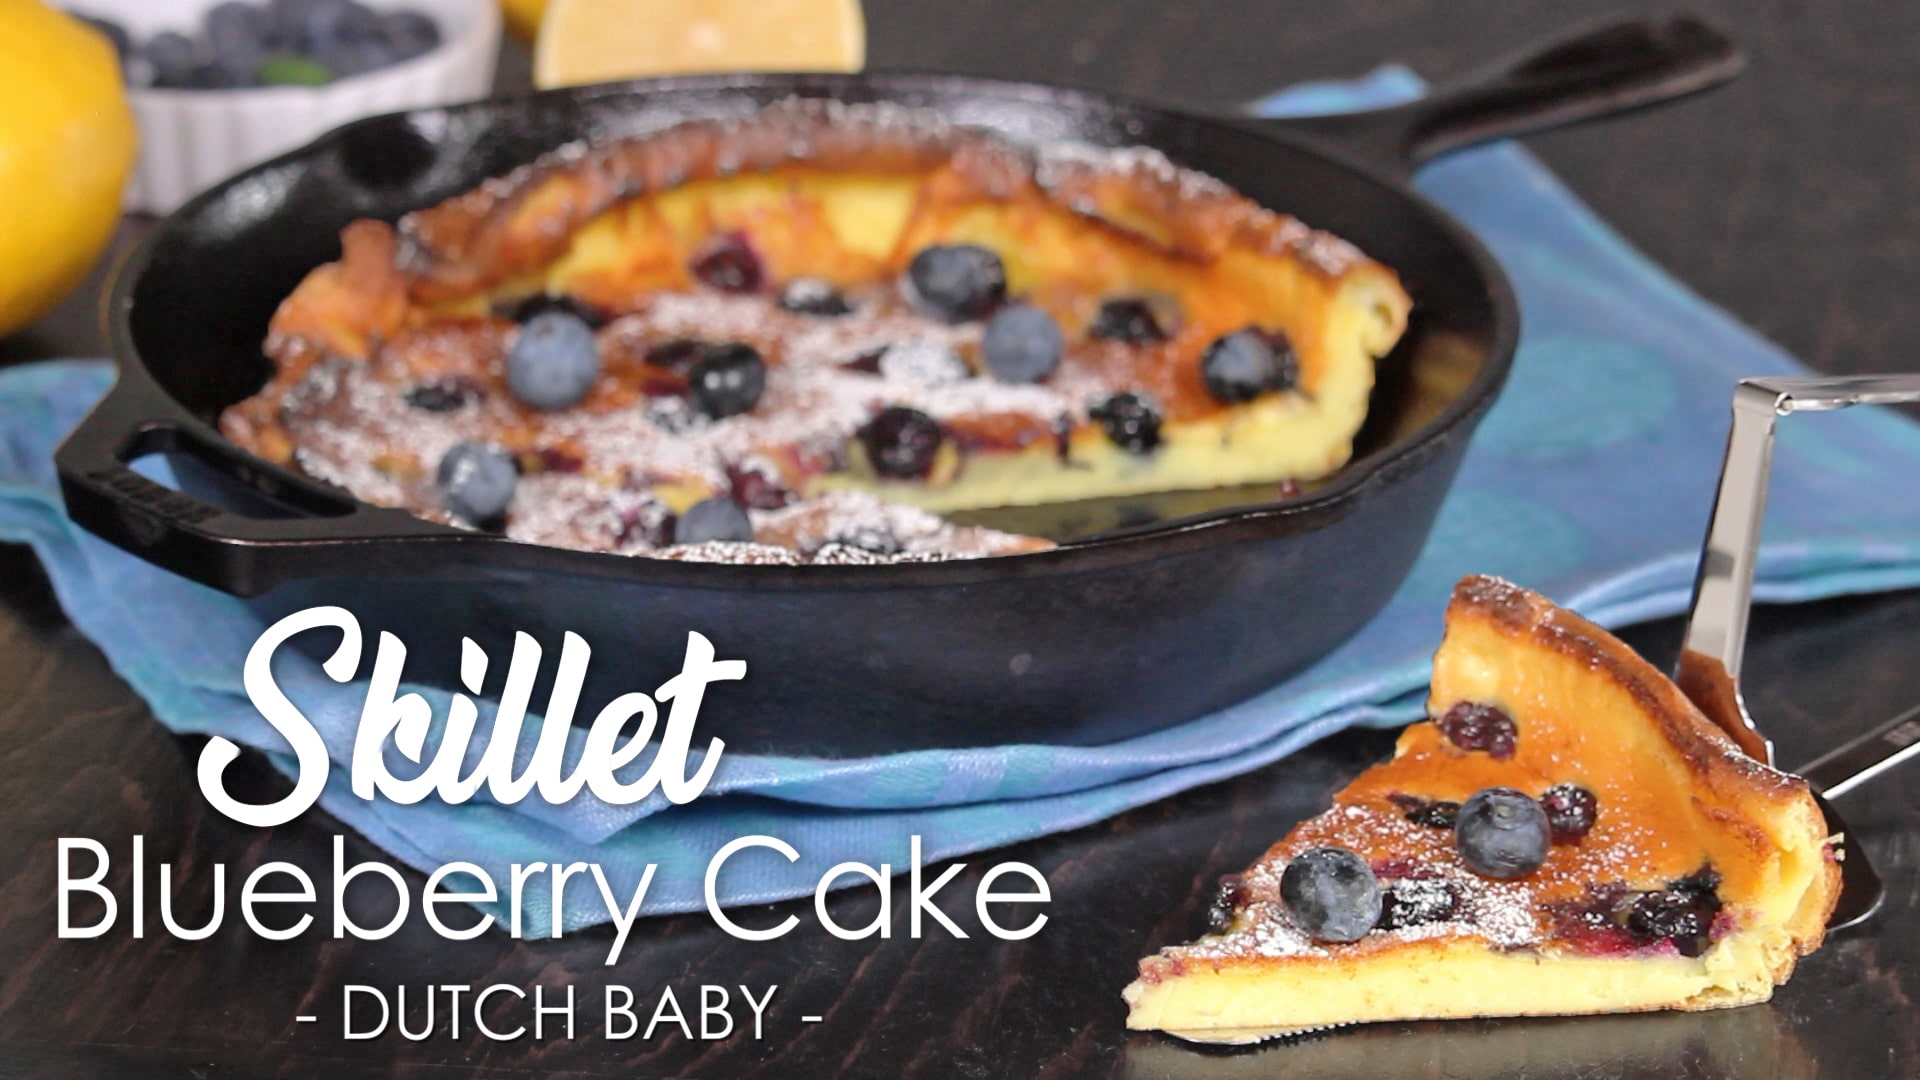 blueberry skillet cake